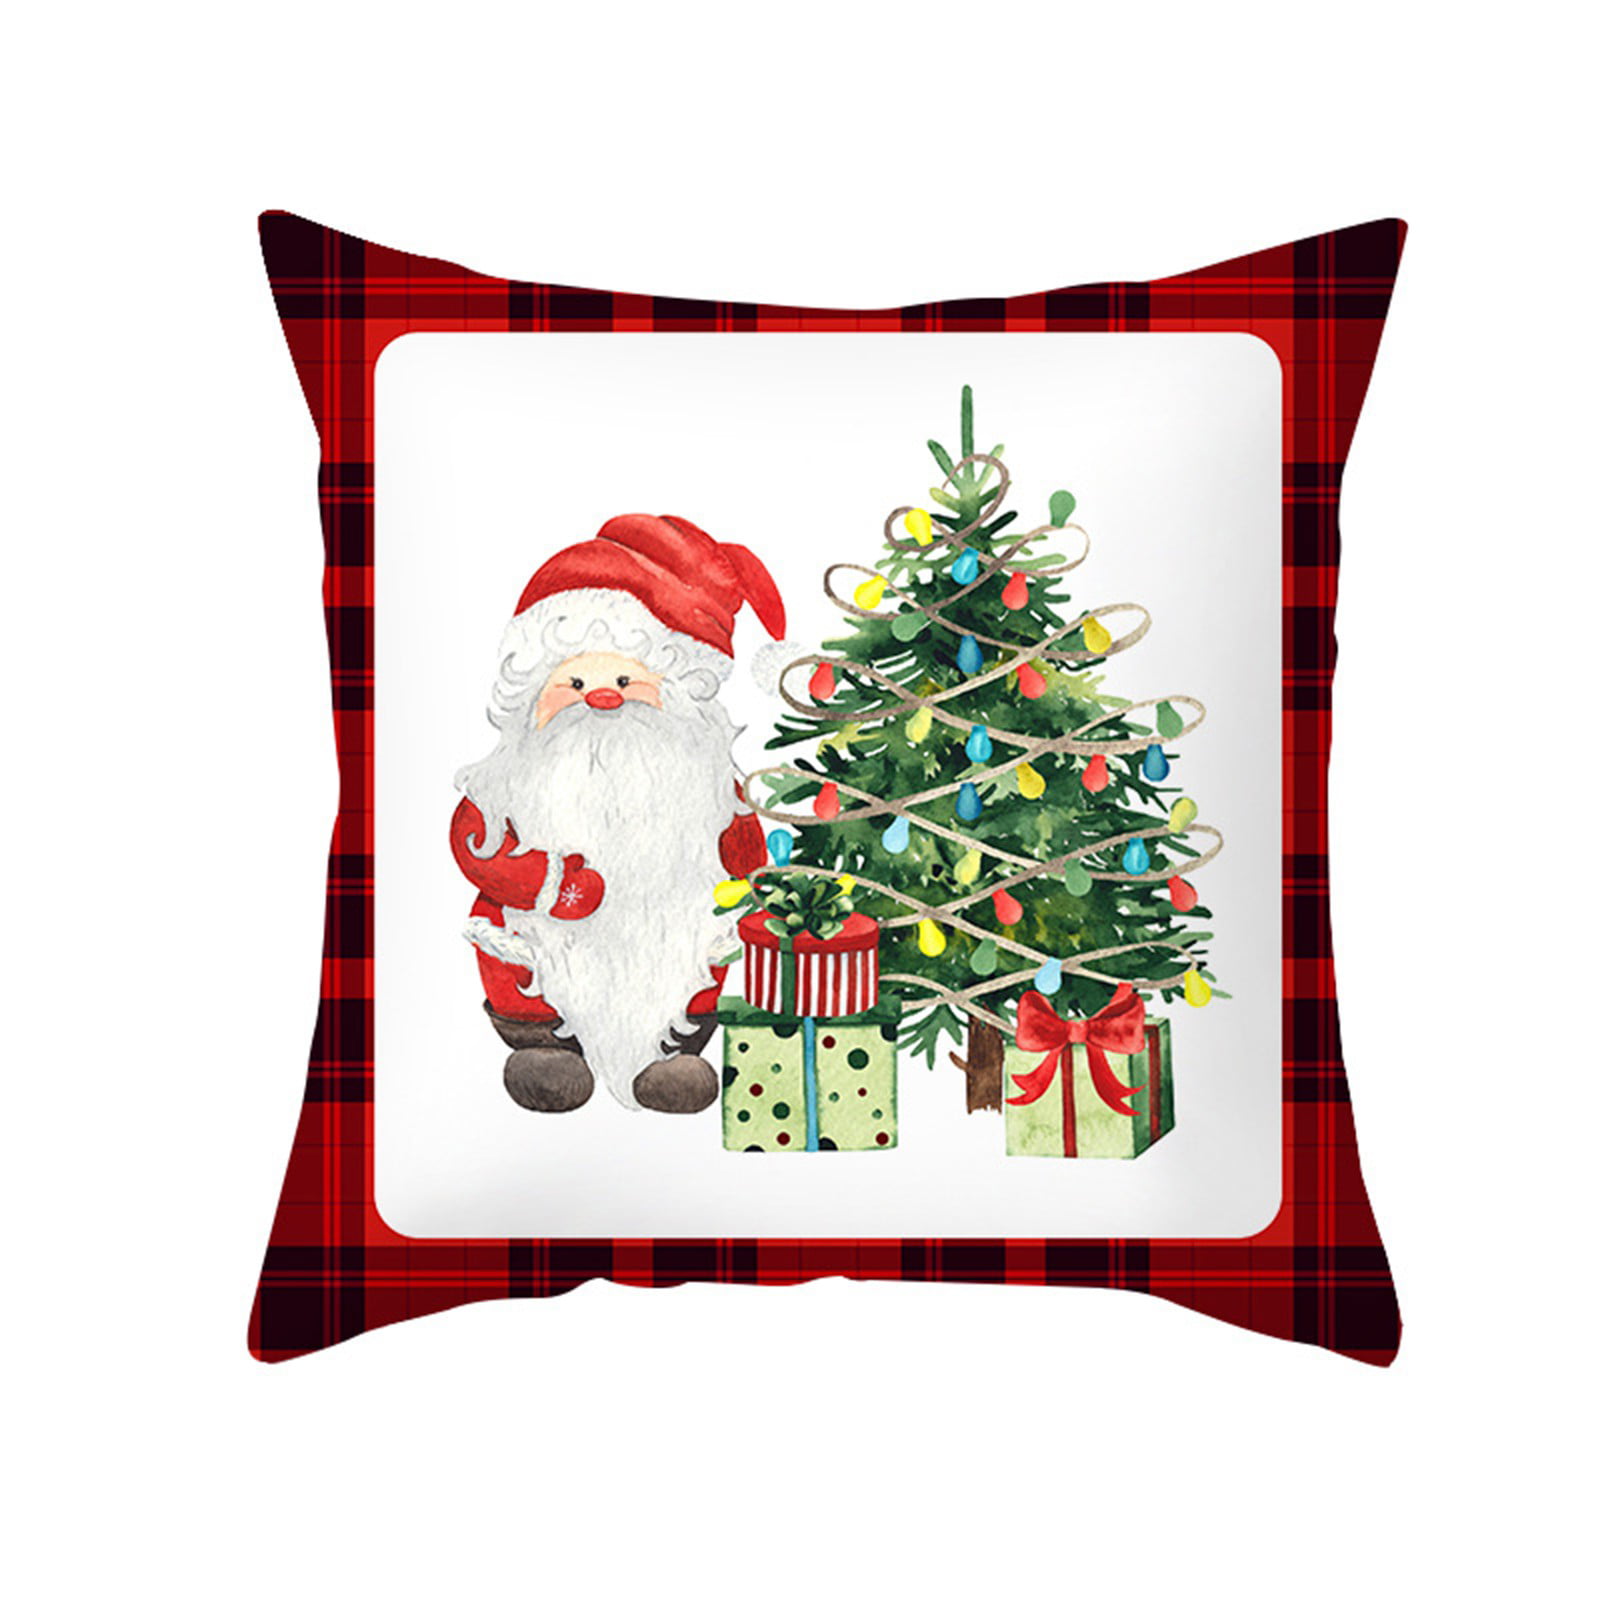 Christmas Pillow Case Cotton Linen Sofa Throw Cushion Cover Home Decor Xmas Gift 